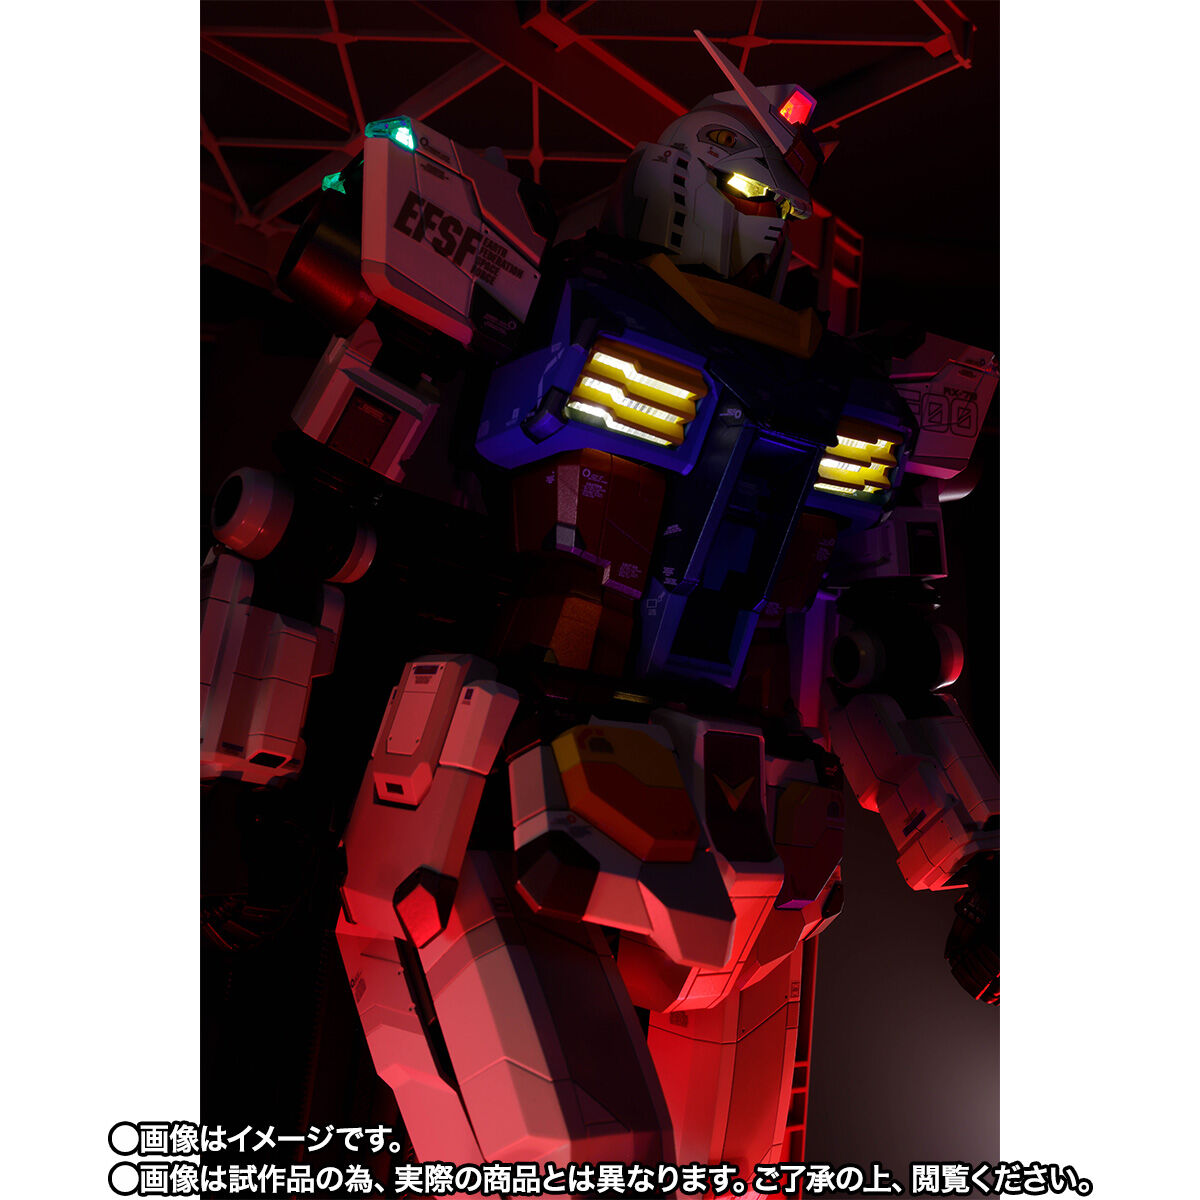 DX Chogokin RX-78F00 Gundam